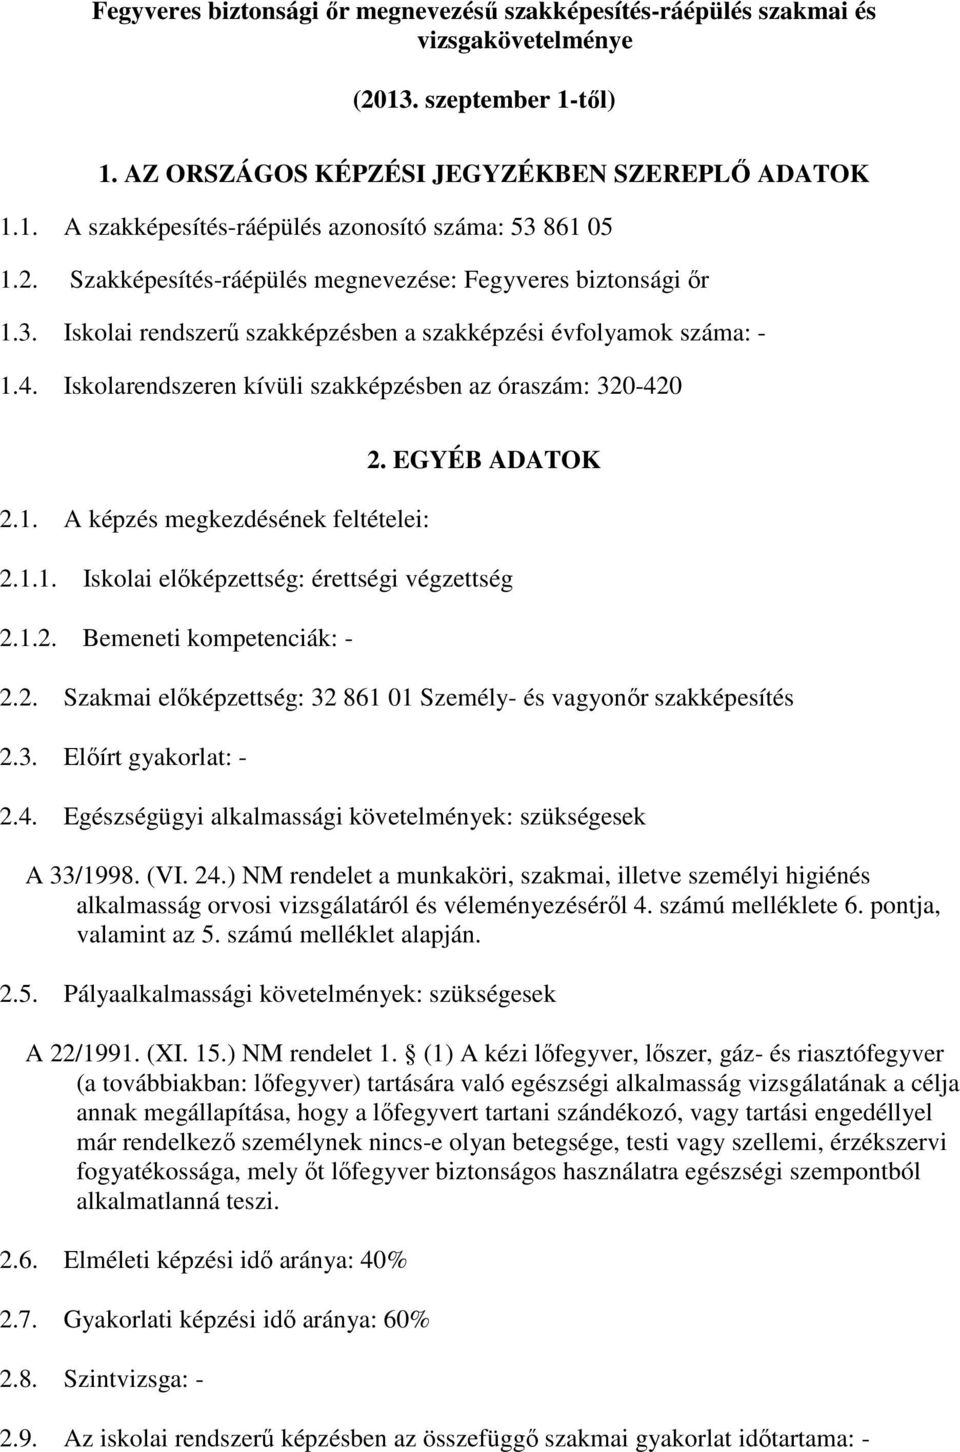 1. A képzés megkezdésének feltételei: 2. EGYÉB ADATOK 2.1.1. Iskolai elıképzettség: érettségi végzettség 2.1.2. Bemeneti kompetenciák: - 2.2. Szakmai elıképzettség: 32 861 01 Személy- és vagyonır szakképesítés 2.